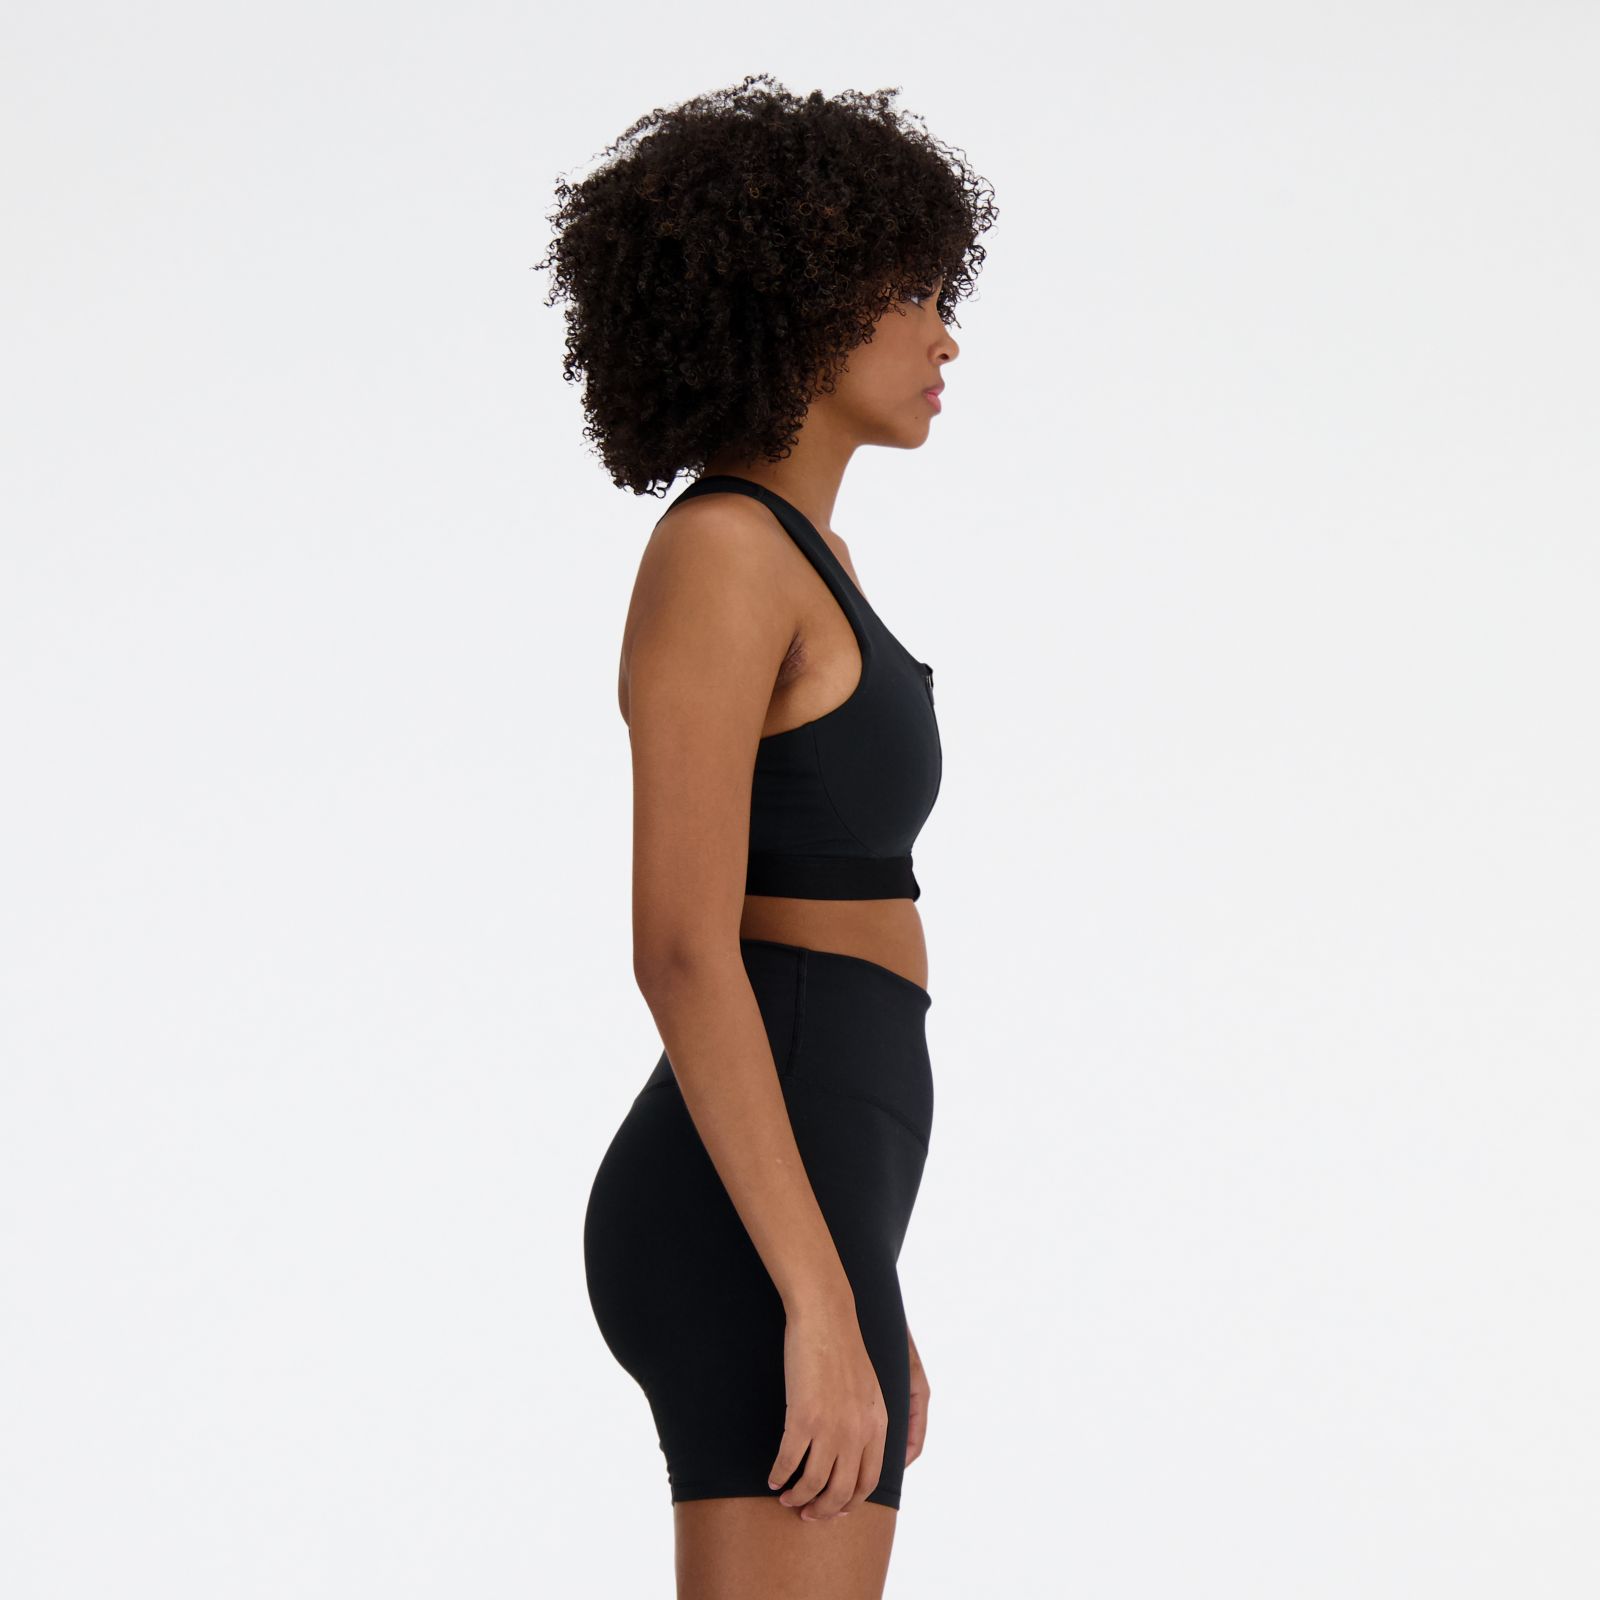 Women's NB Sleek Medium Support Pocket Zip Front Bra - New Balance